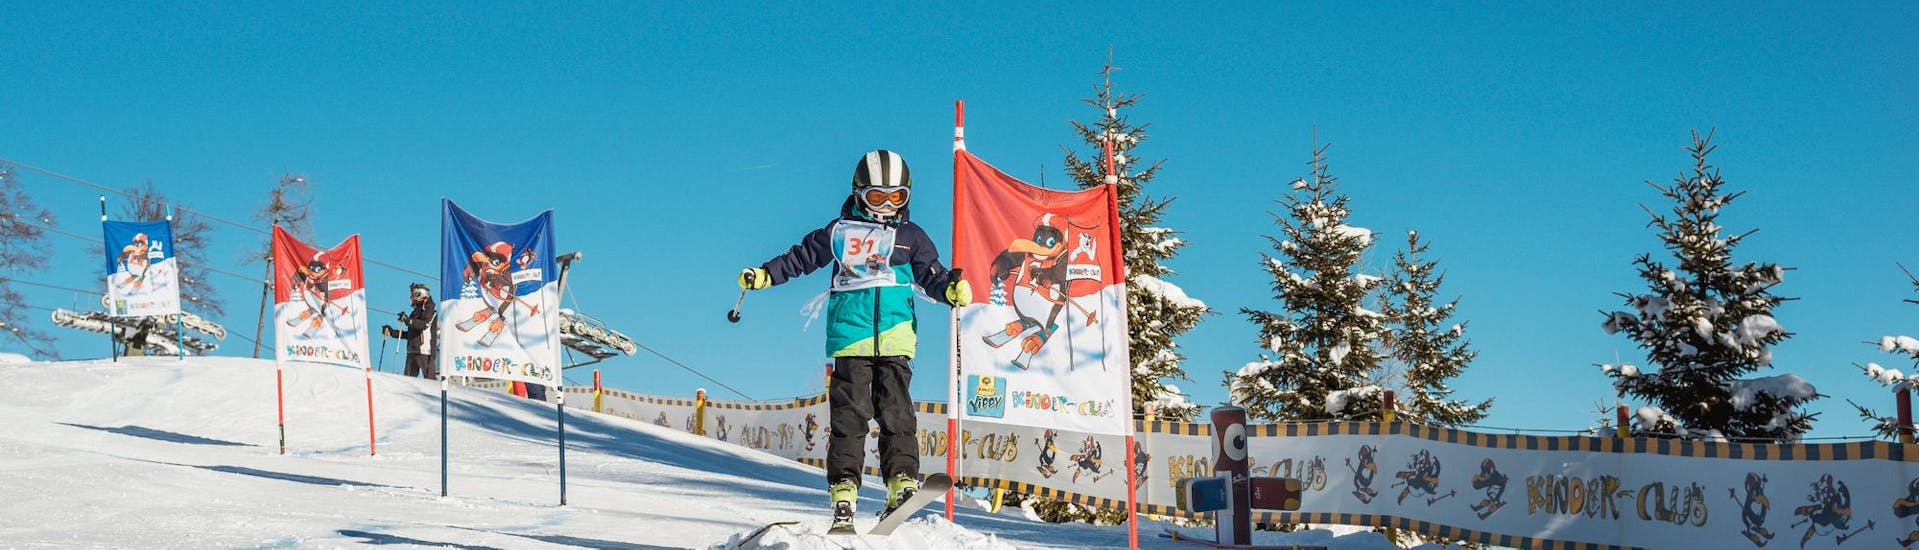 Clases de esquí para niños a partir de 4 años con experiencia.